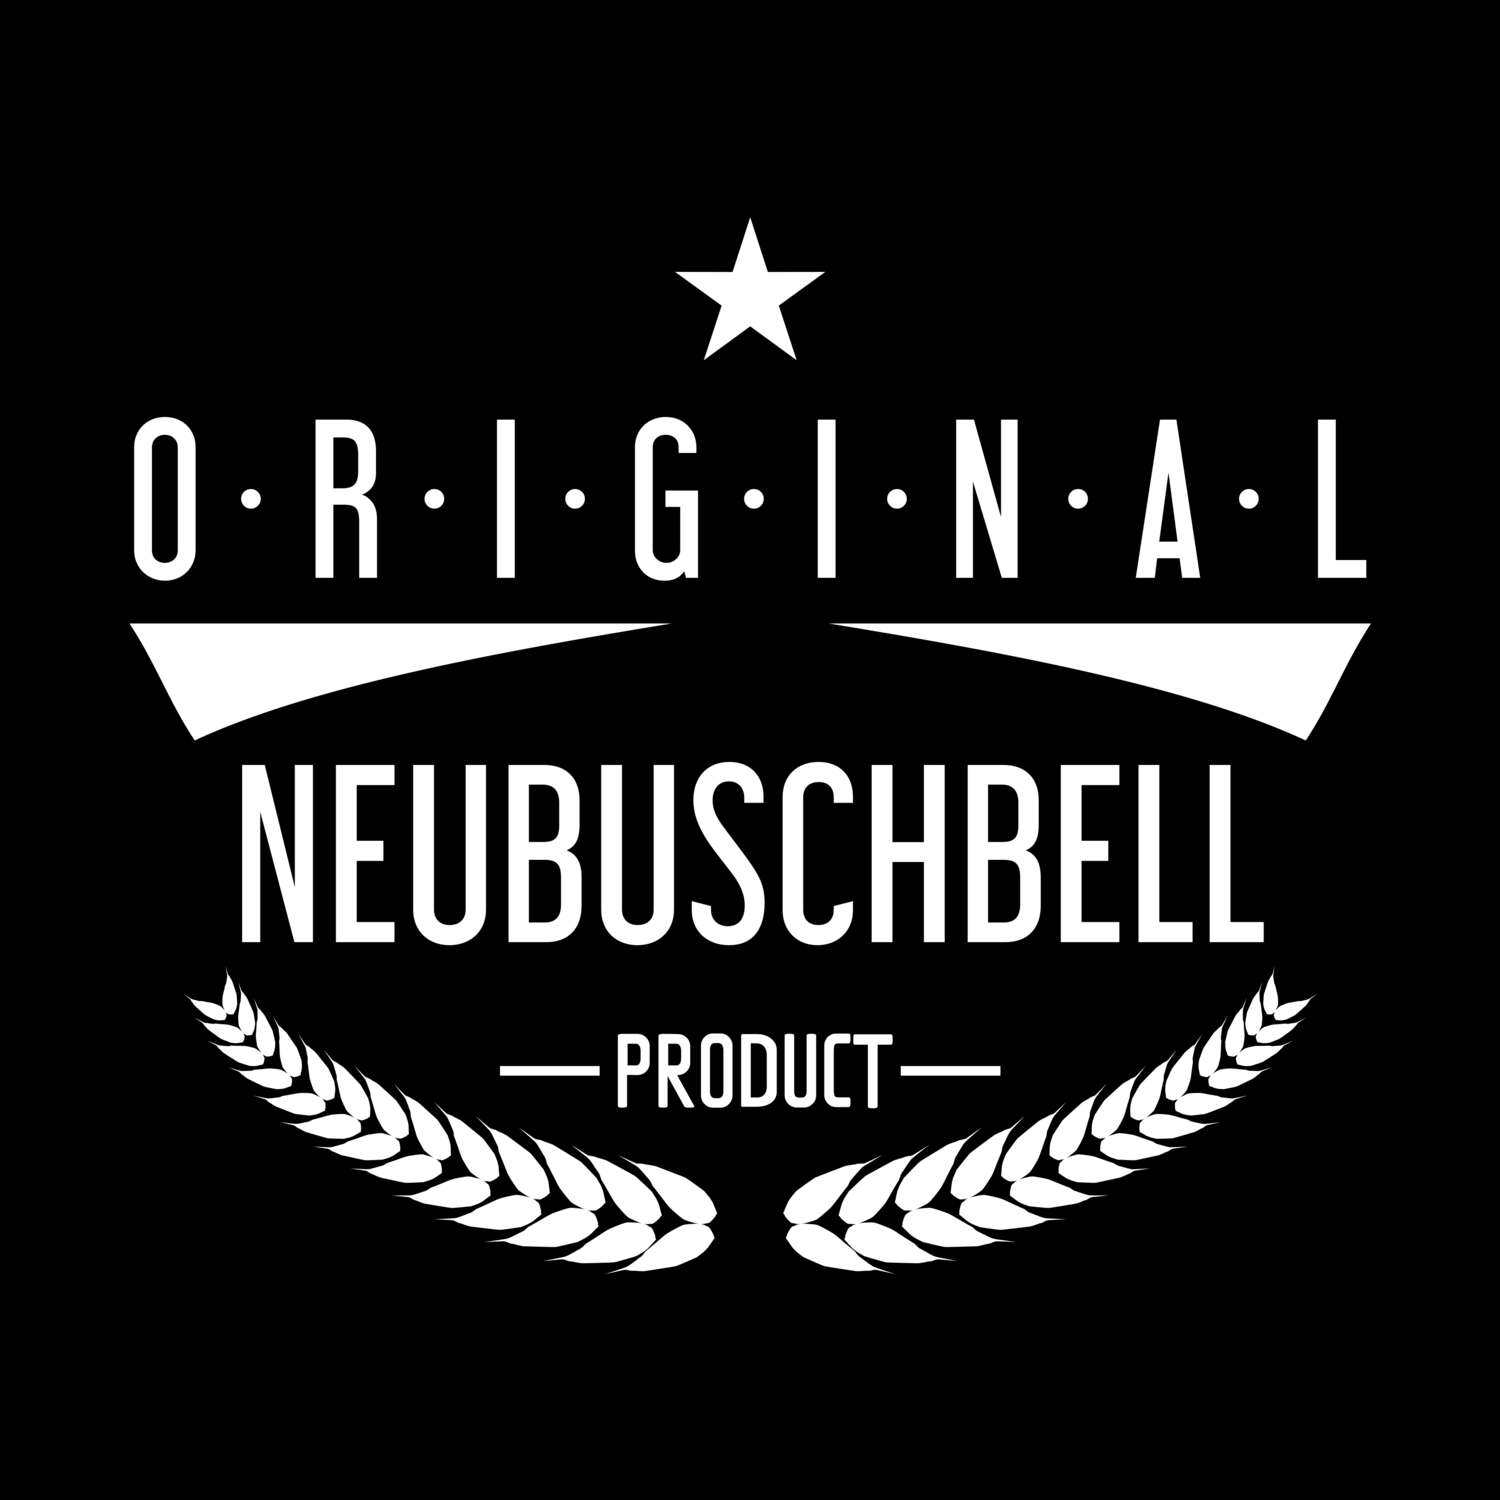 Neubuschbell T-Shirt »Original Product«